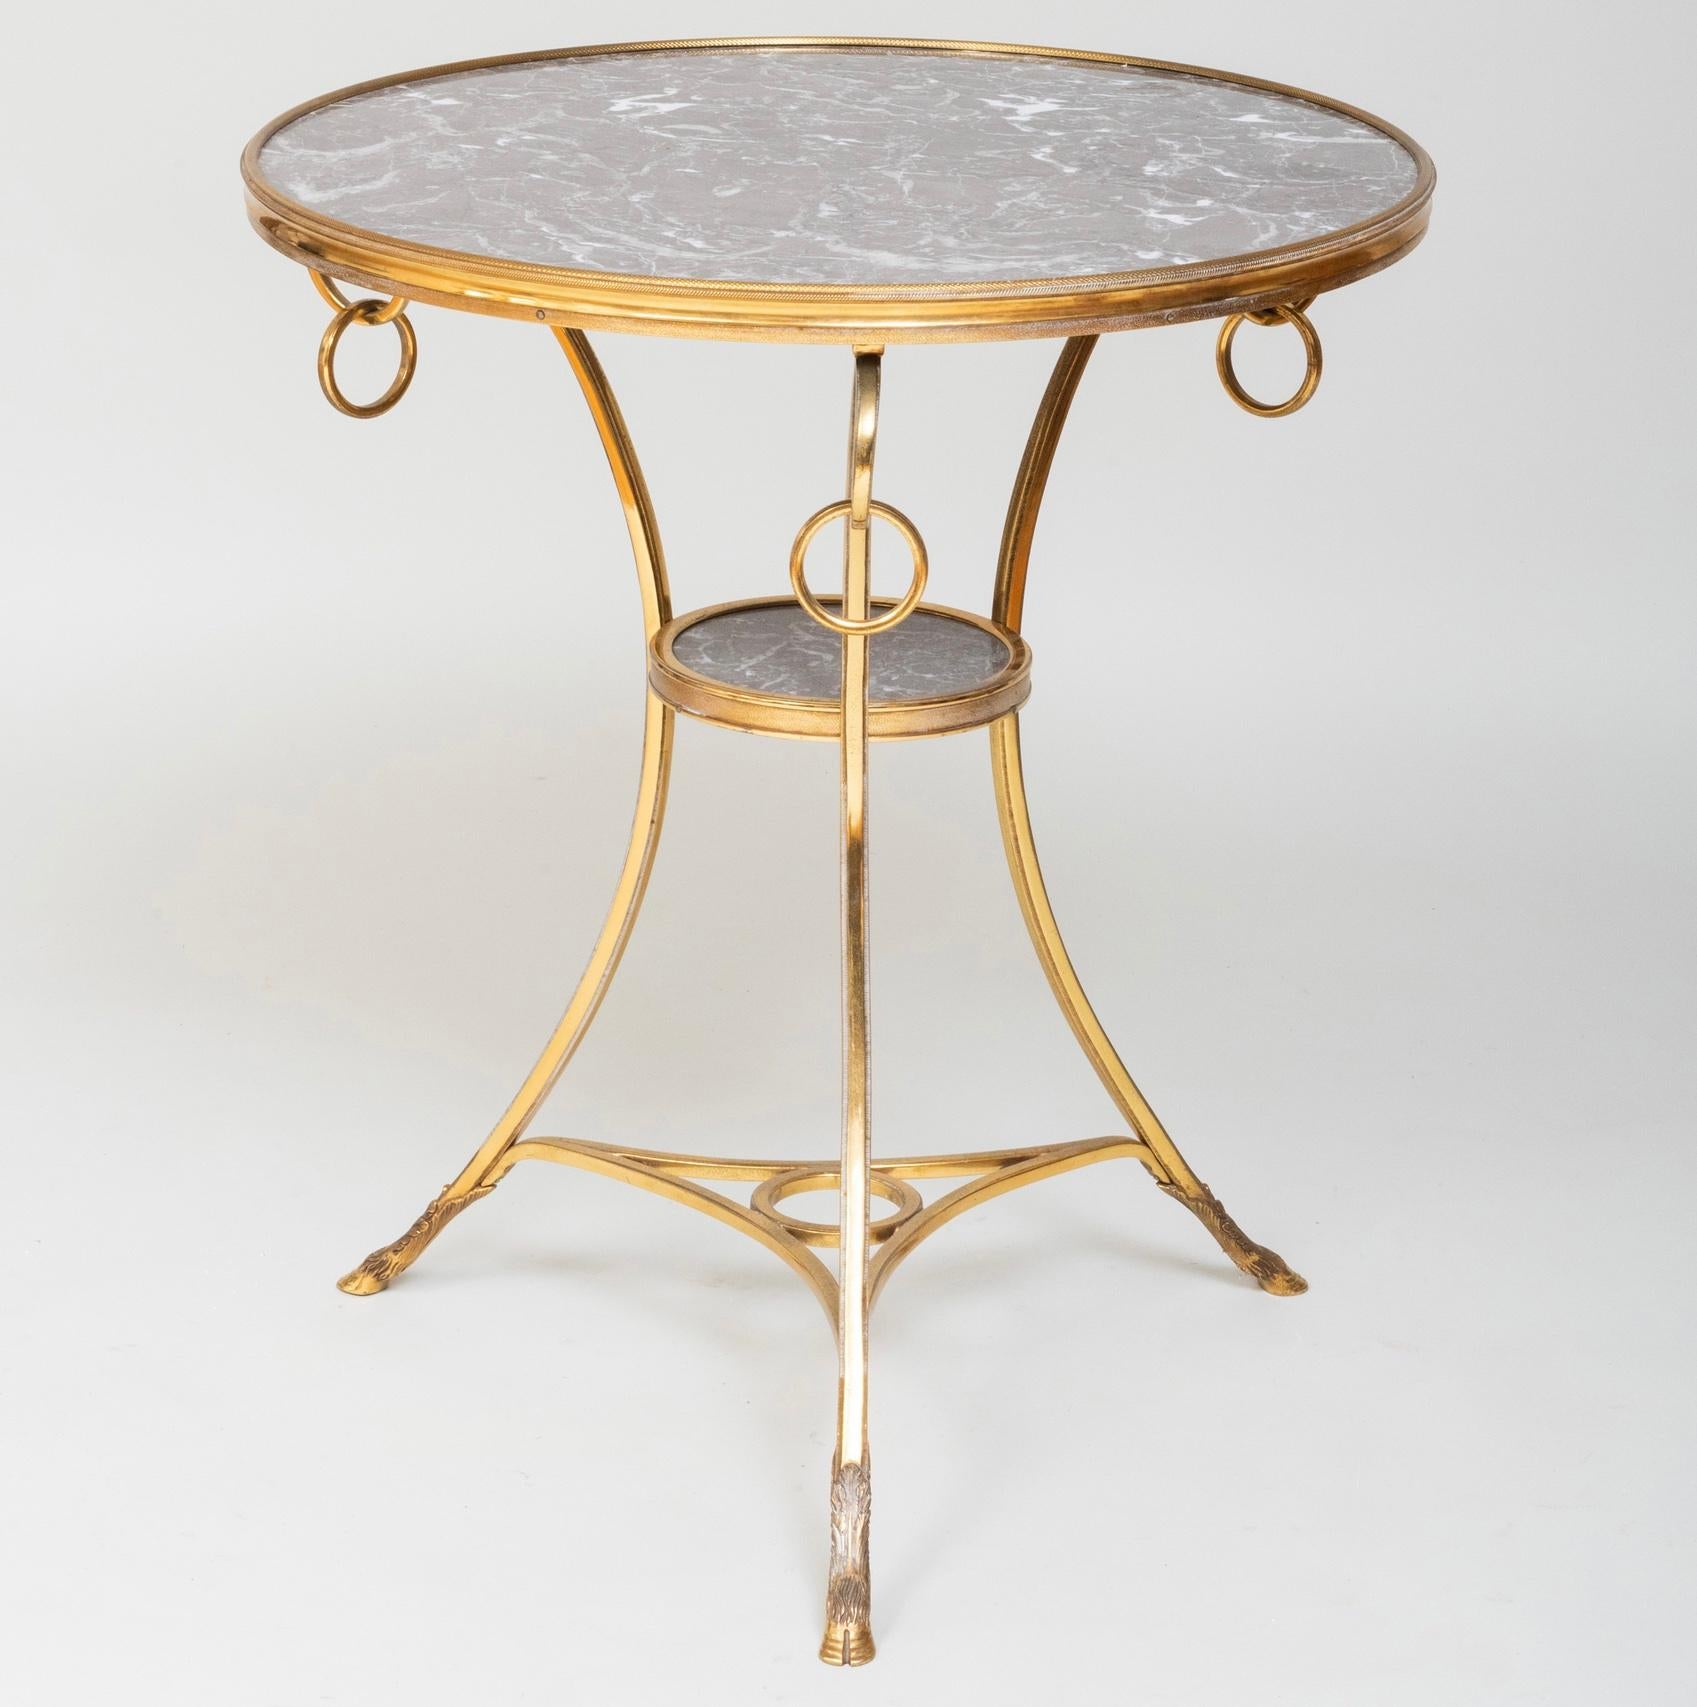 Elegante mesa auxiliar redonda con anillas decorativas colgando del faldón y patas hendidas. Detalles refinados y calidad.